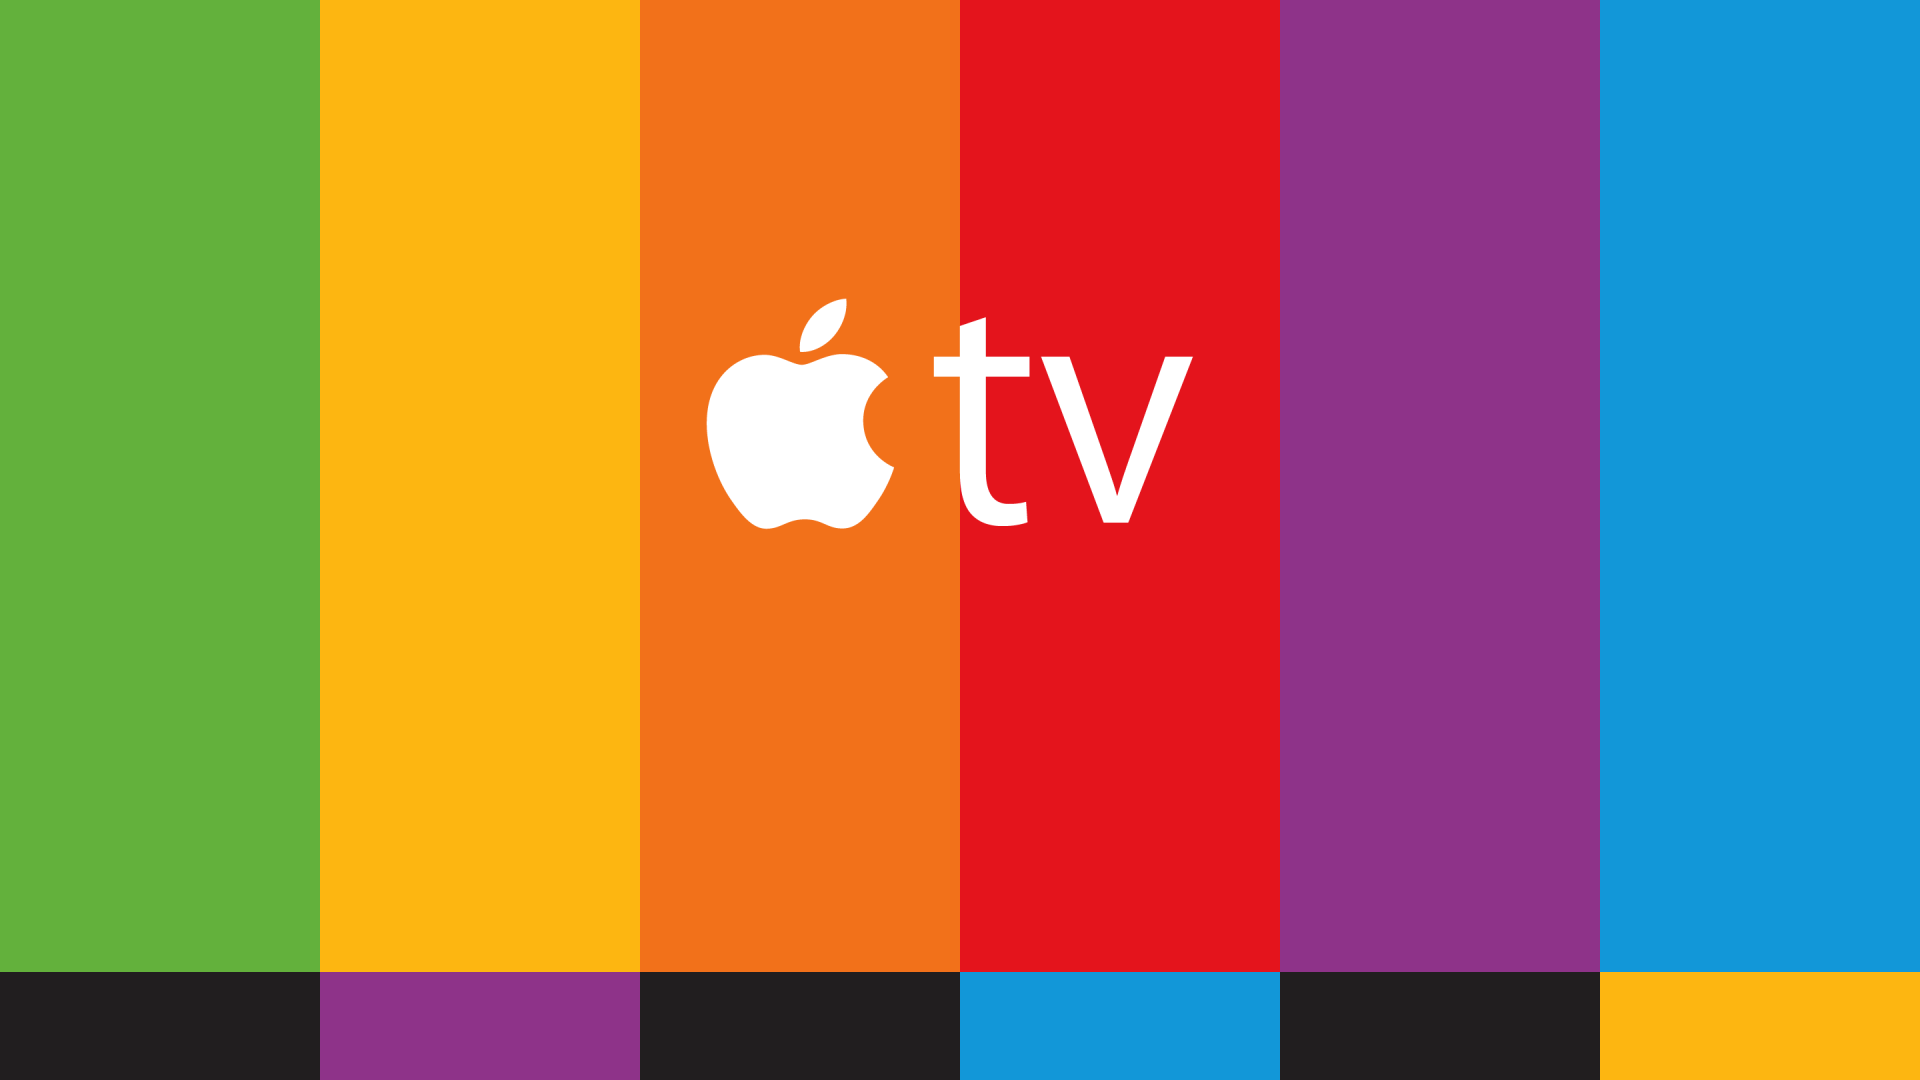 Apple Released beta 4 of iOS 10.2, macOS Sierra 10.12.2, tvOS 10.1 and watchOS 3.1.1